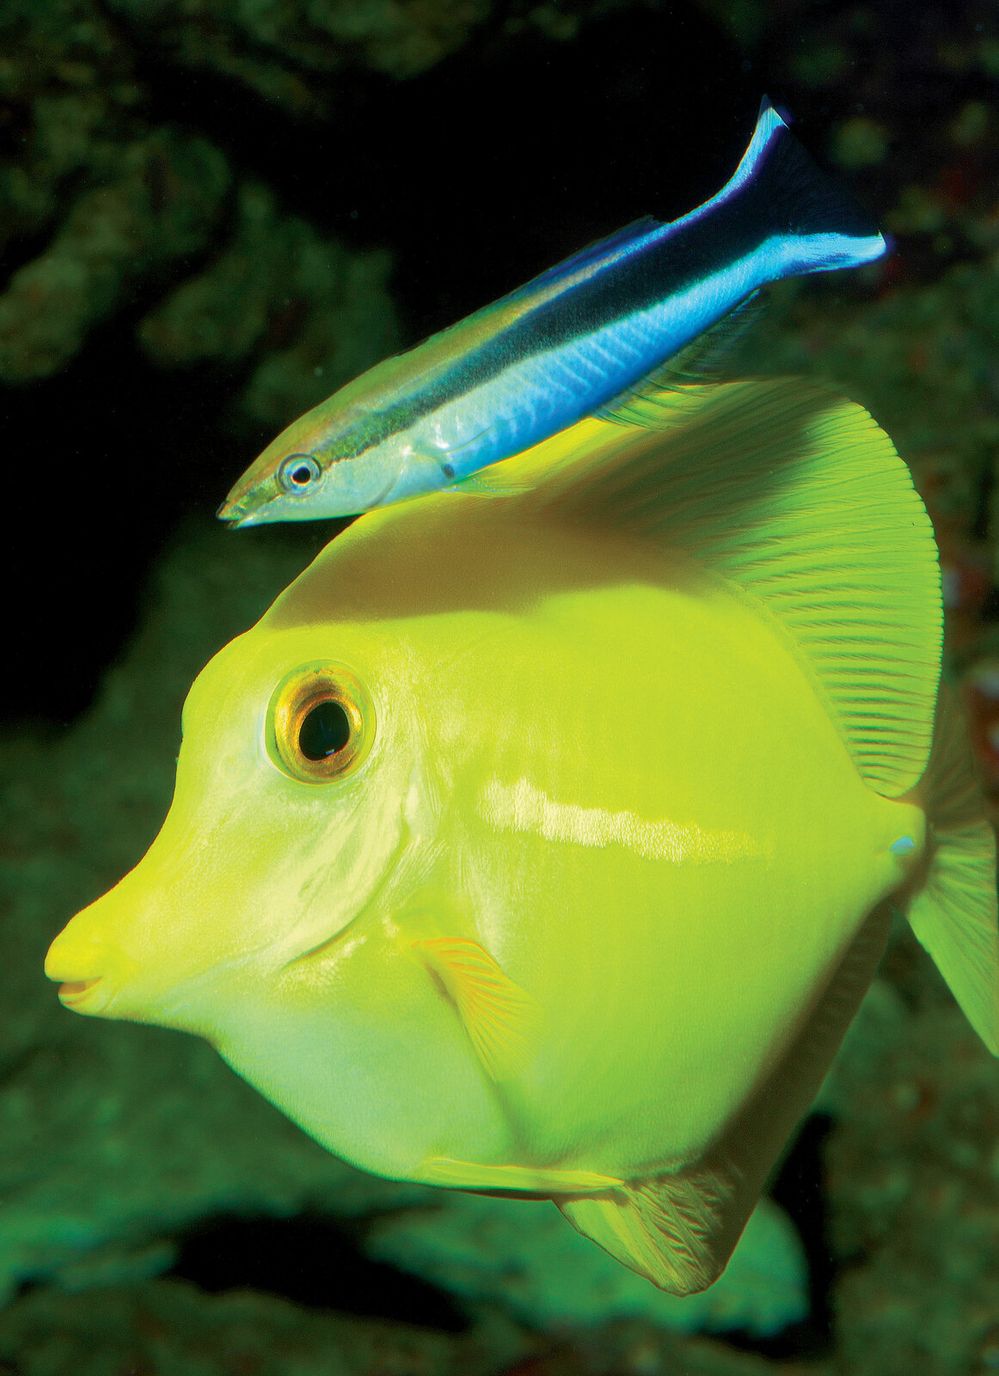 Pyskoun rozpůlený obírá bodlokovi žlutému parazity z těla. Ryba ochotně drží, protože se jinak cizopasníků nezbaví.